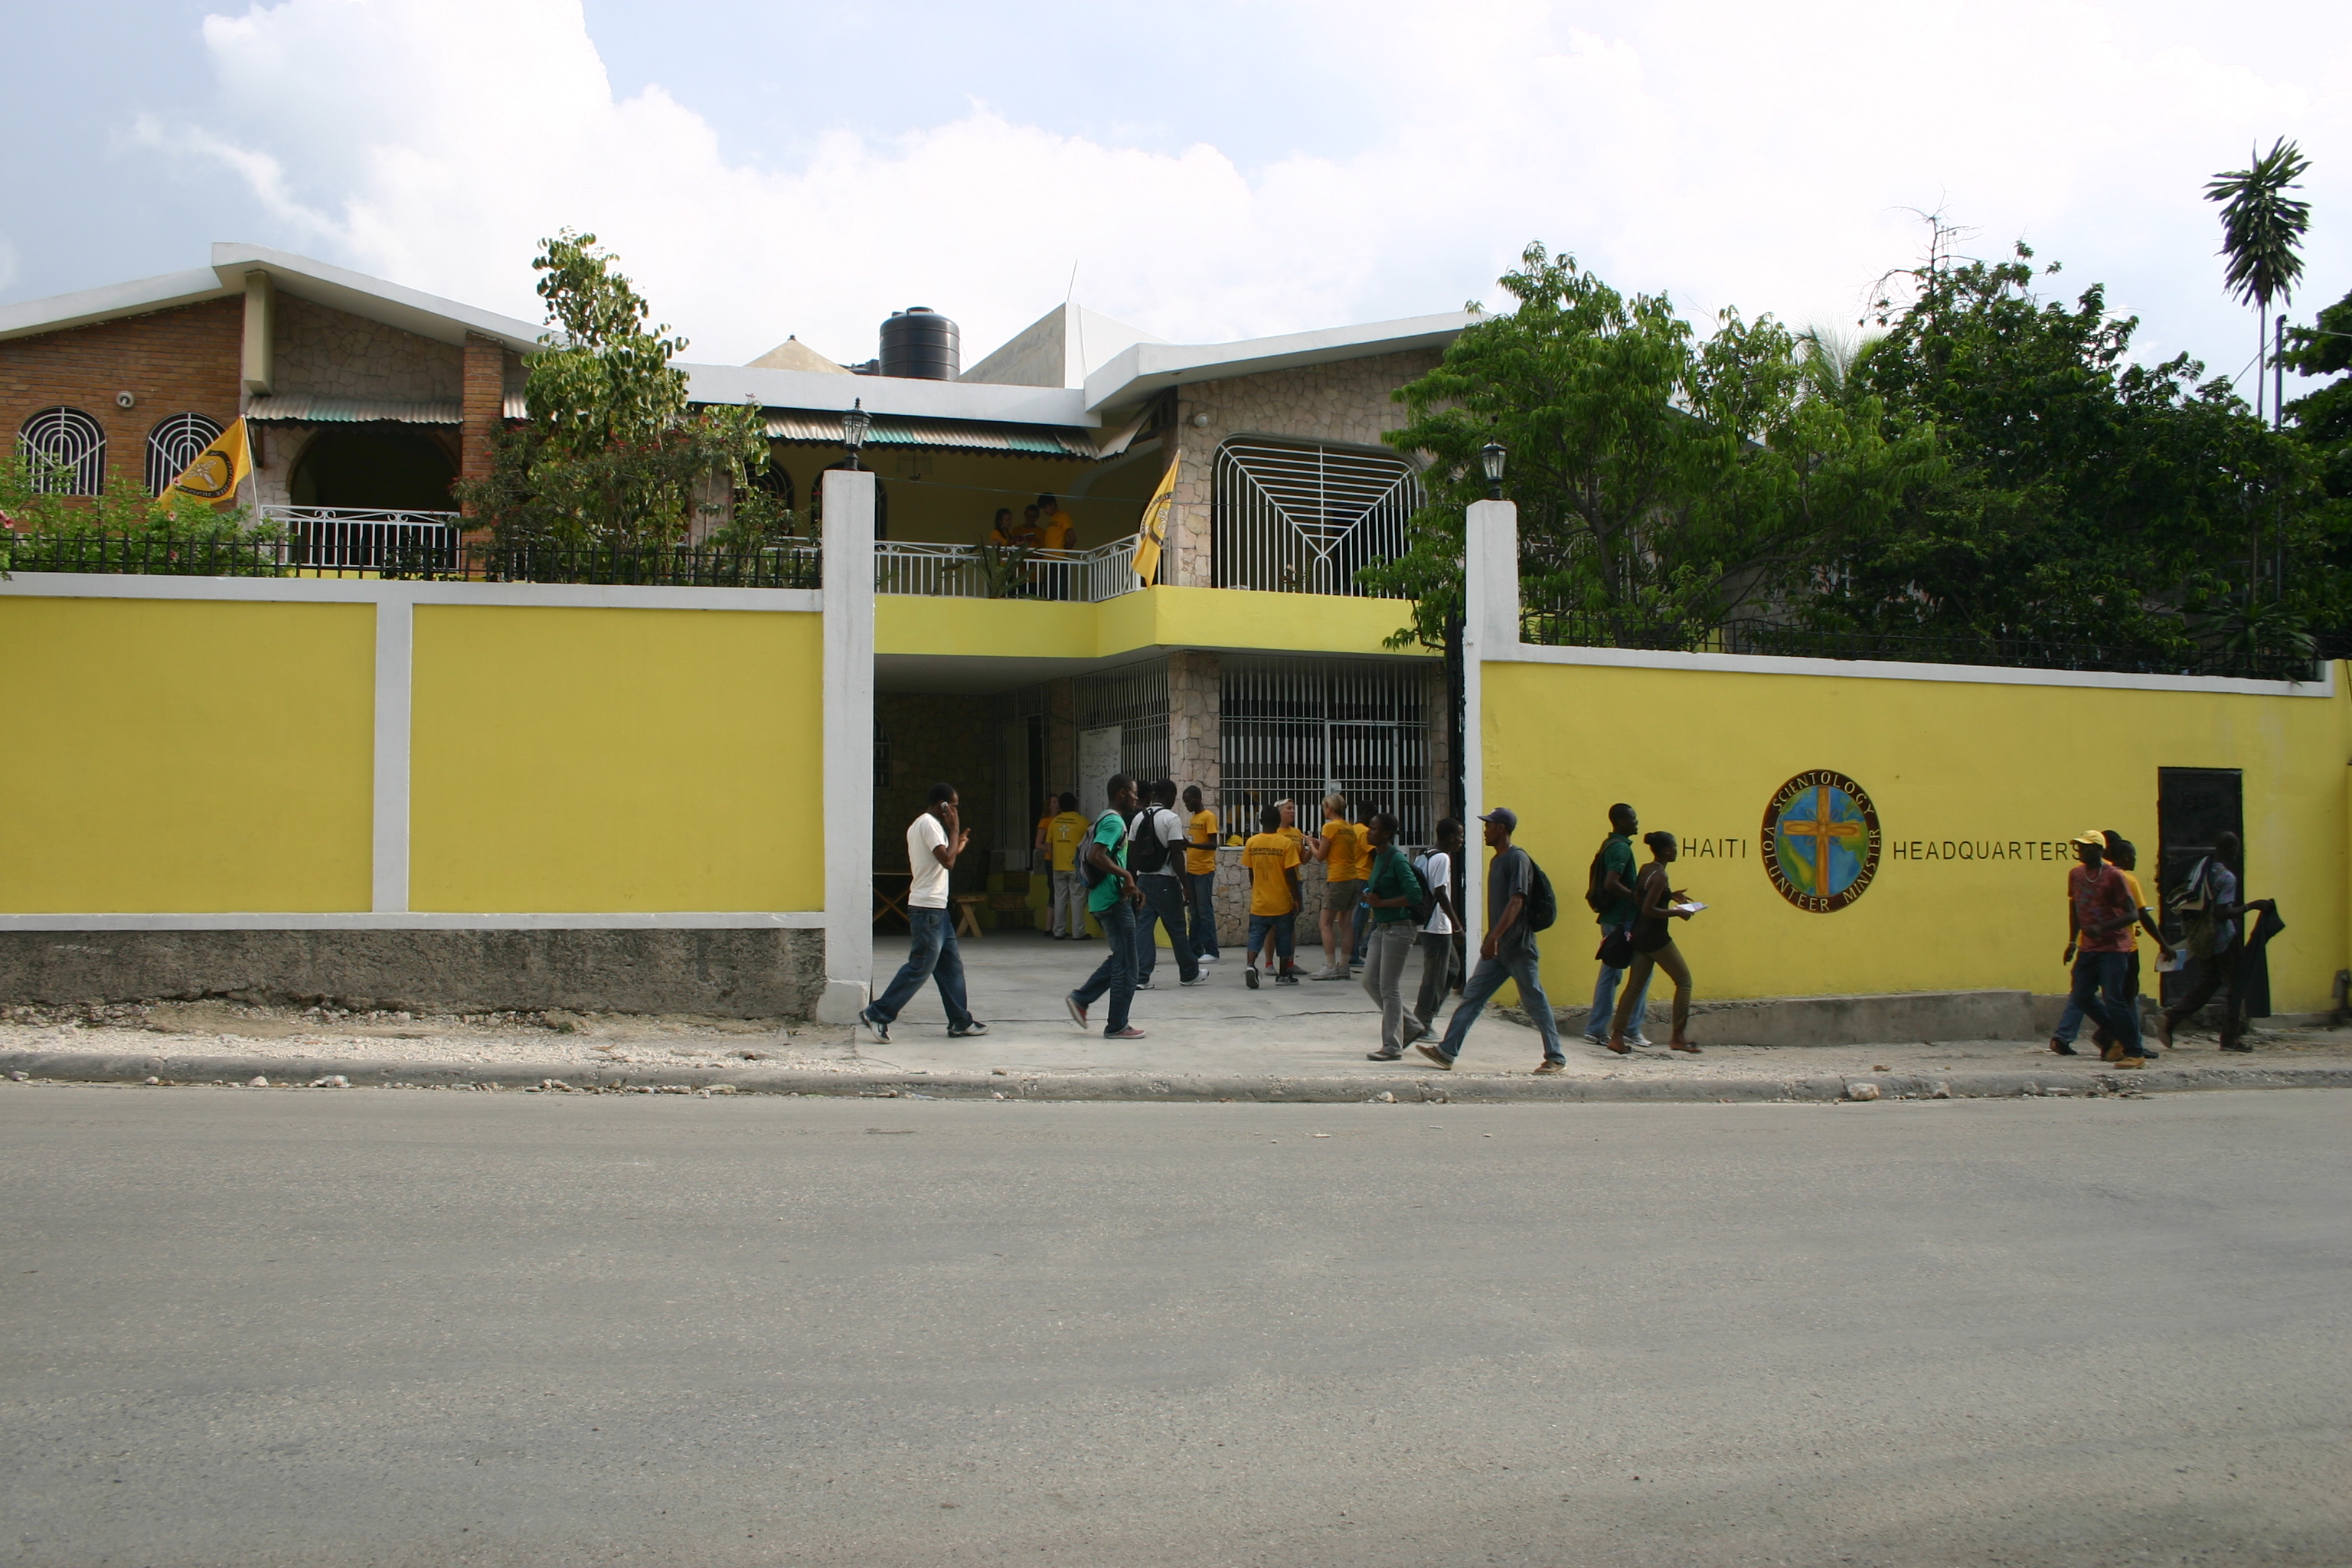 Az új, háromszintes önkéntes lelkész épület Haitin lehetővé teszi a haiti népesség biztonságos és hatékony segítését.